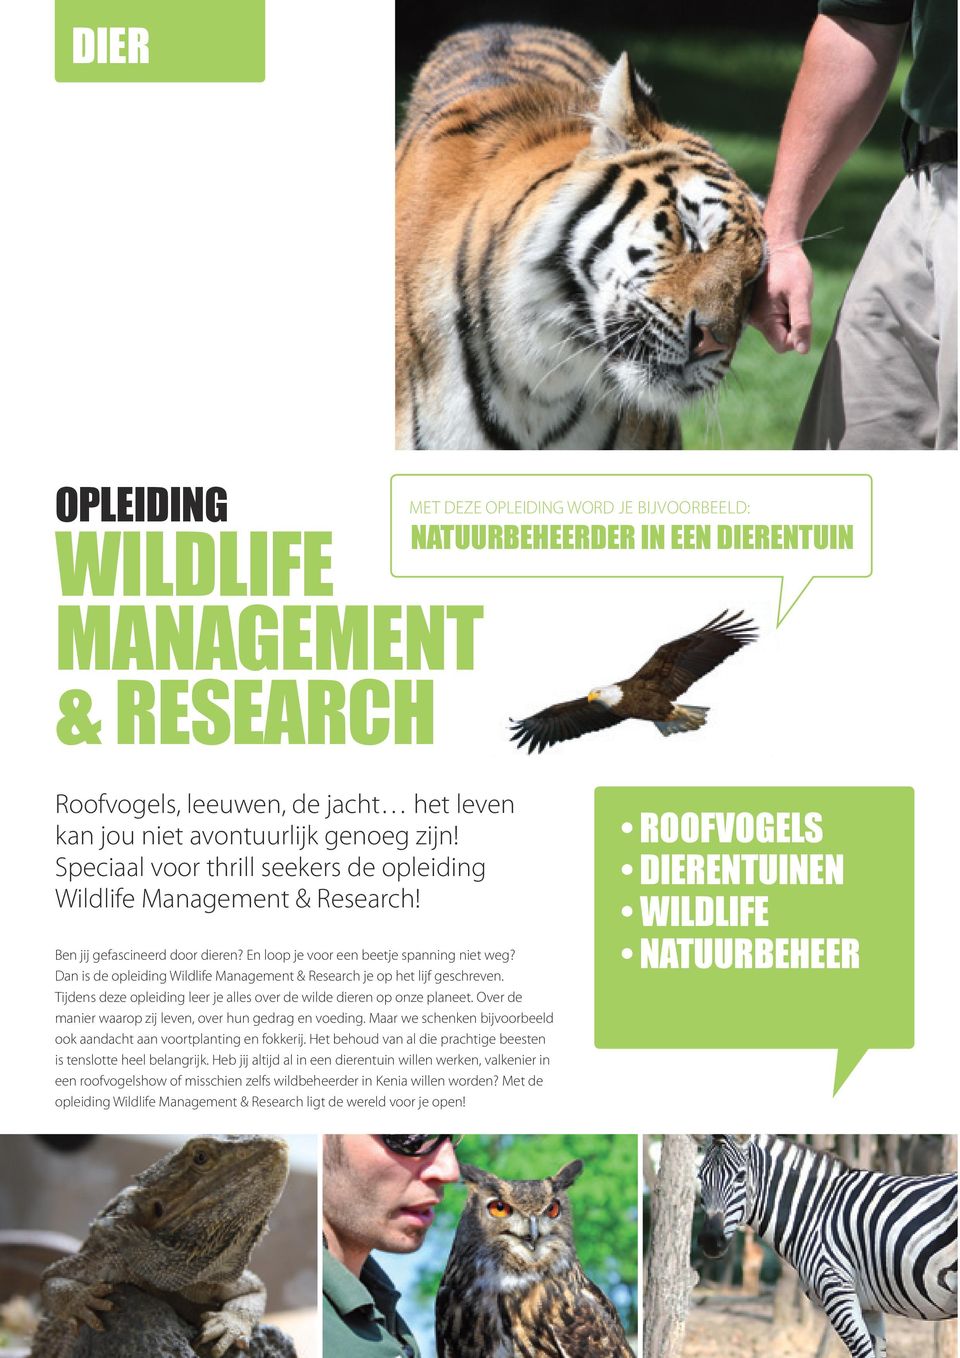 Dan is de opleiding Wildlife Management & Research je op het lijf geschreven. Tijdens deze opleiding leer je alles over de wilde dieren op onze planeet.